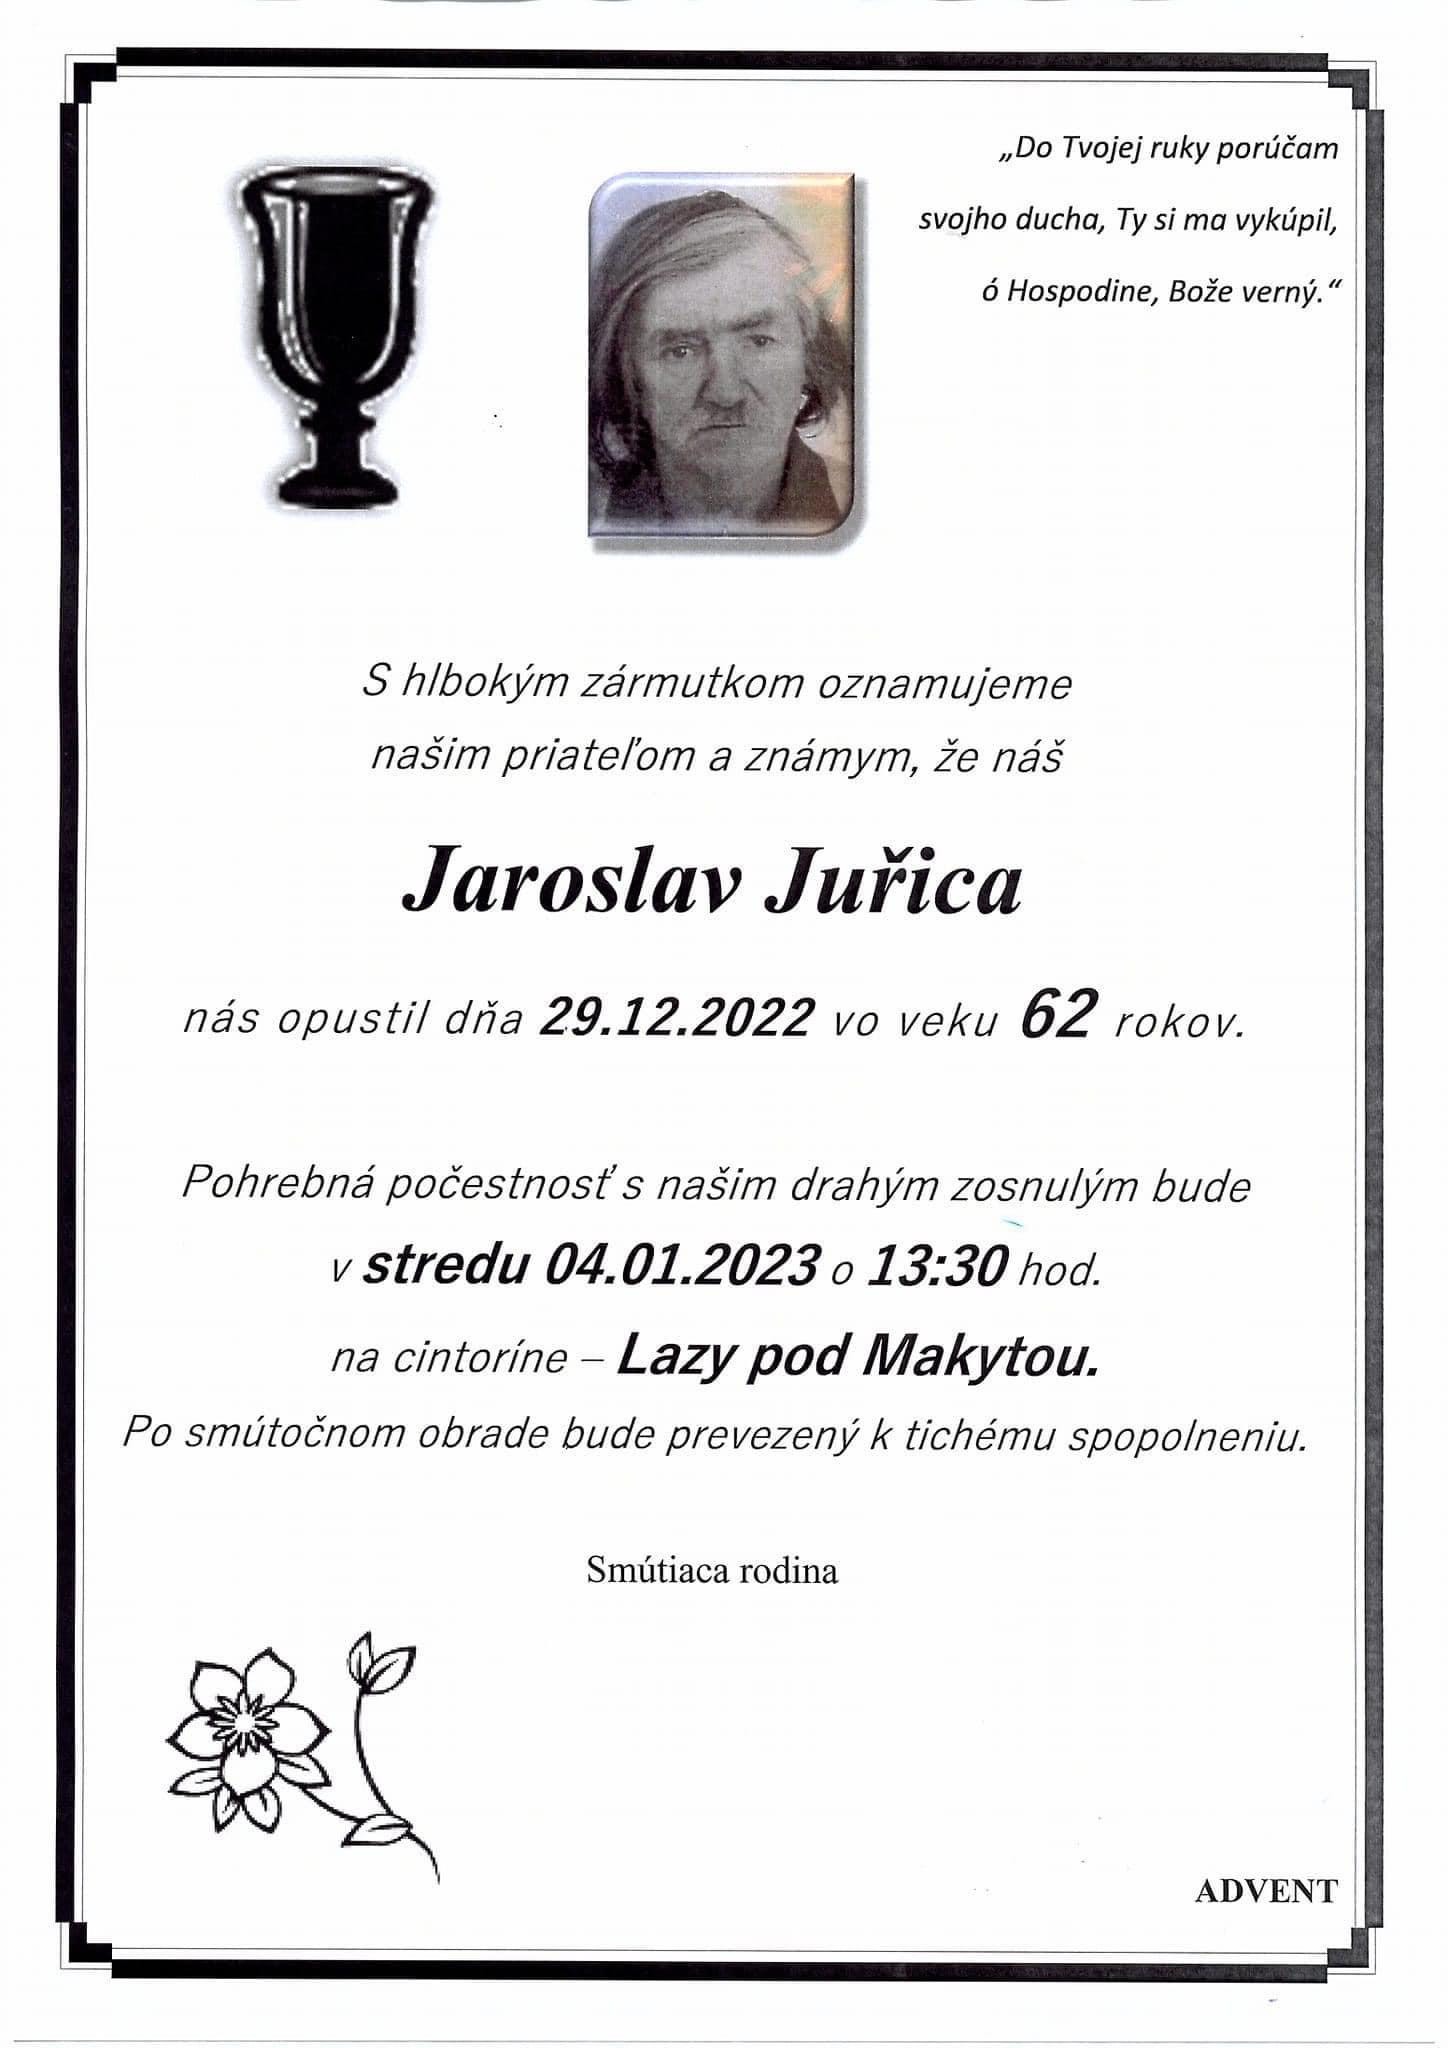 Jaroslav Jurica